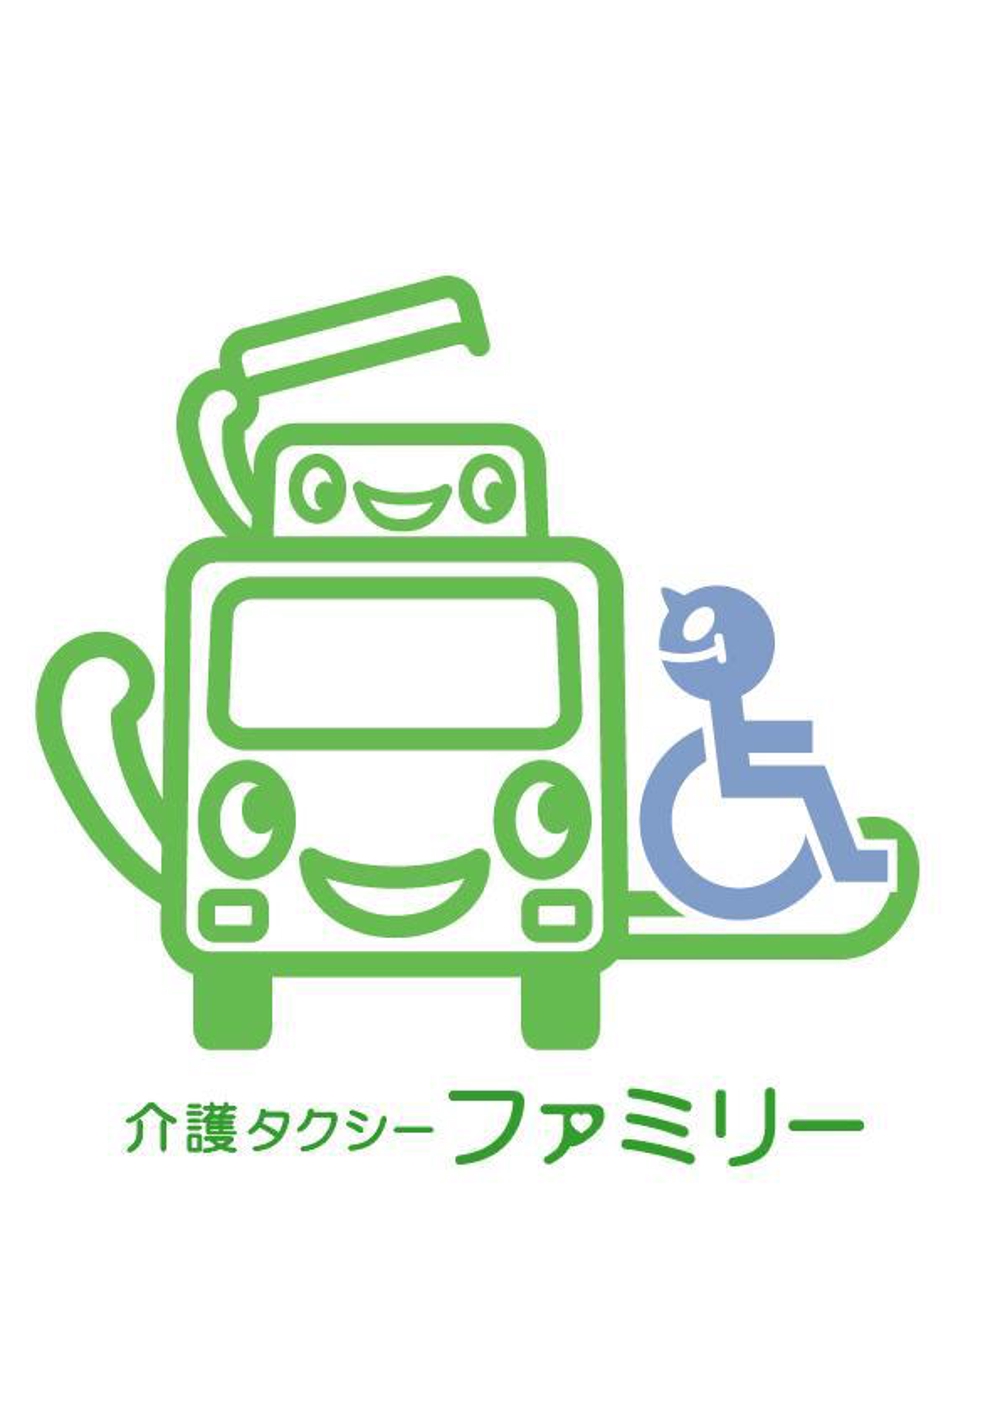 介護タクシーファミリーのロゴ